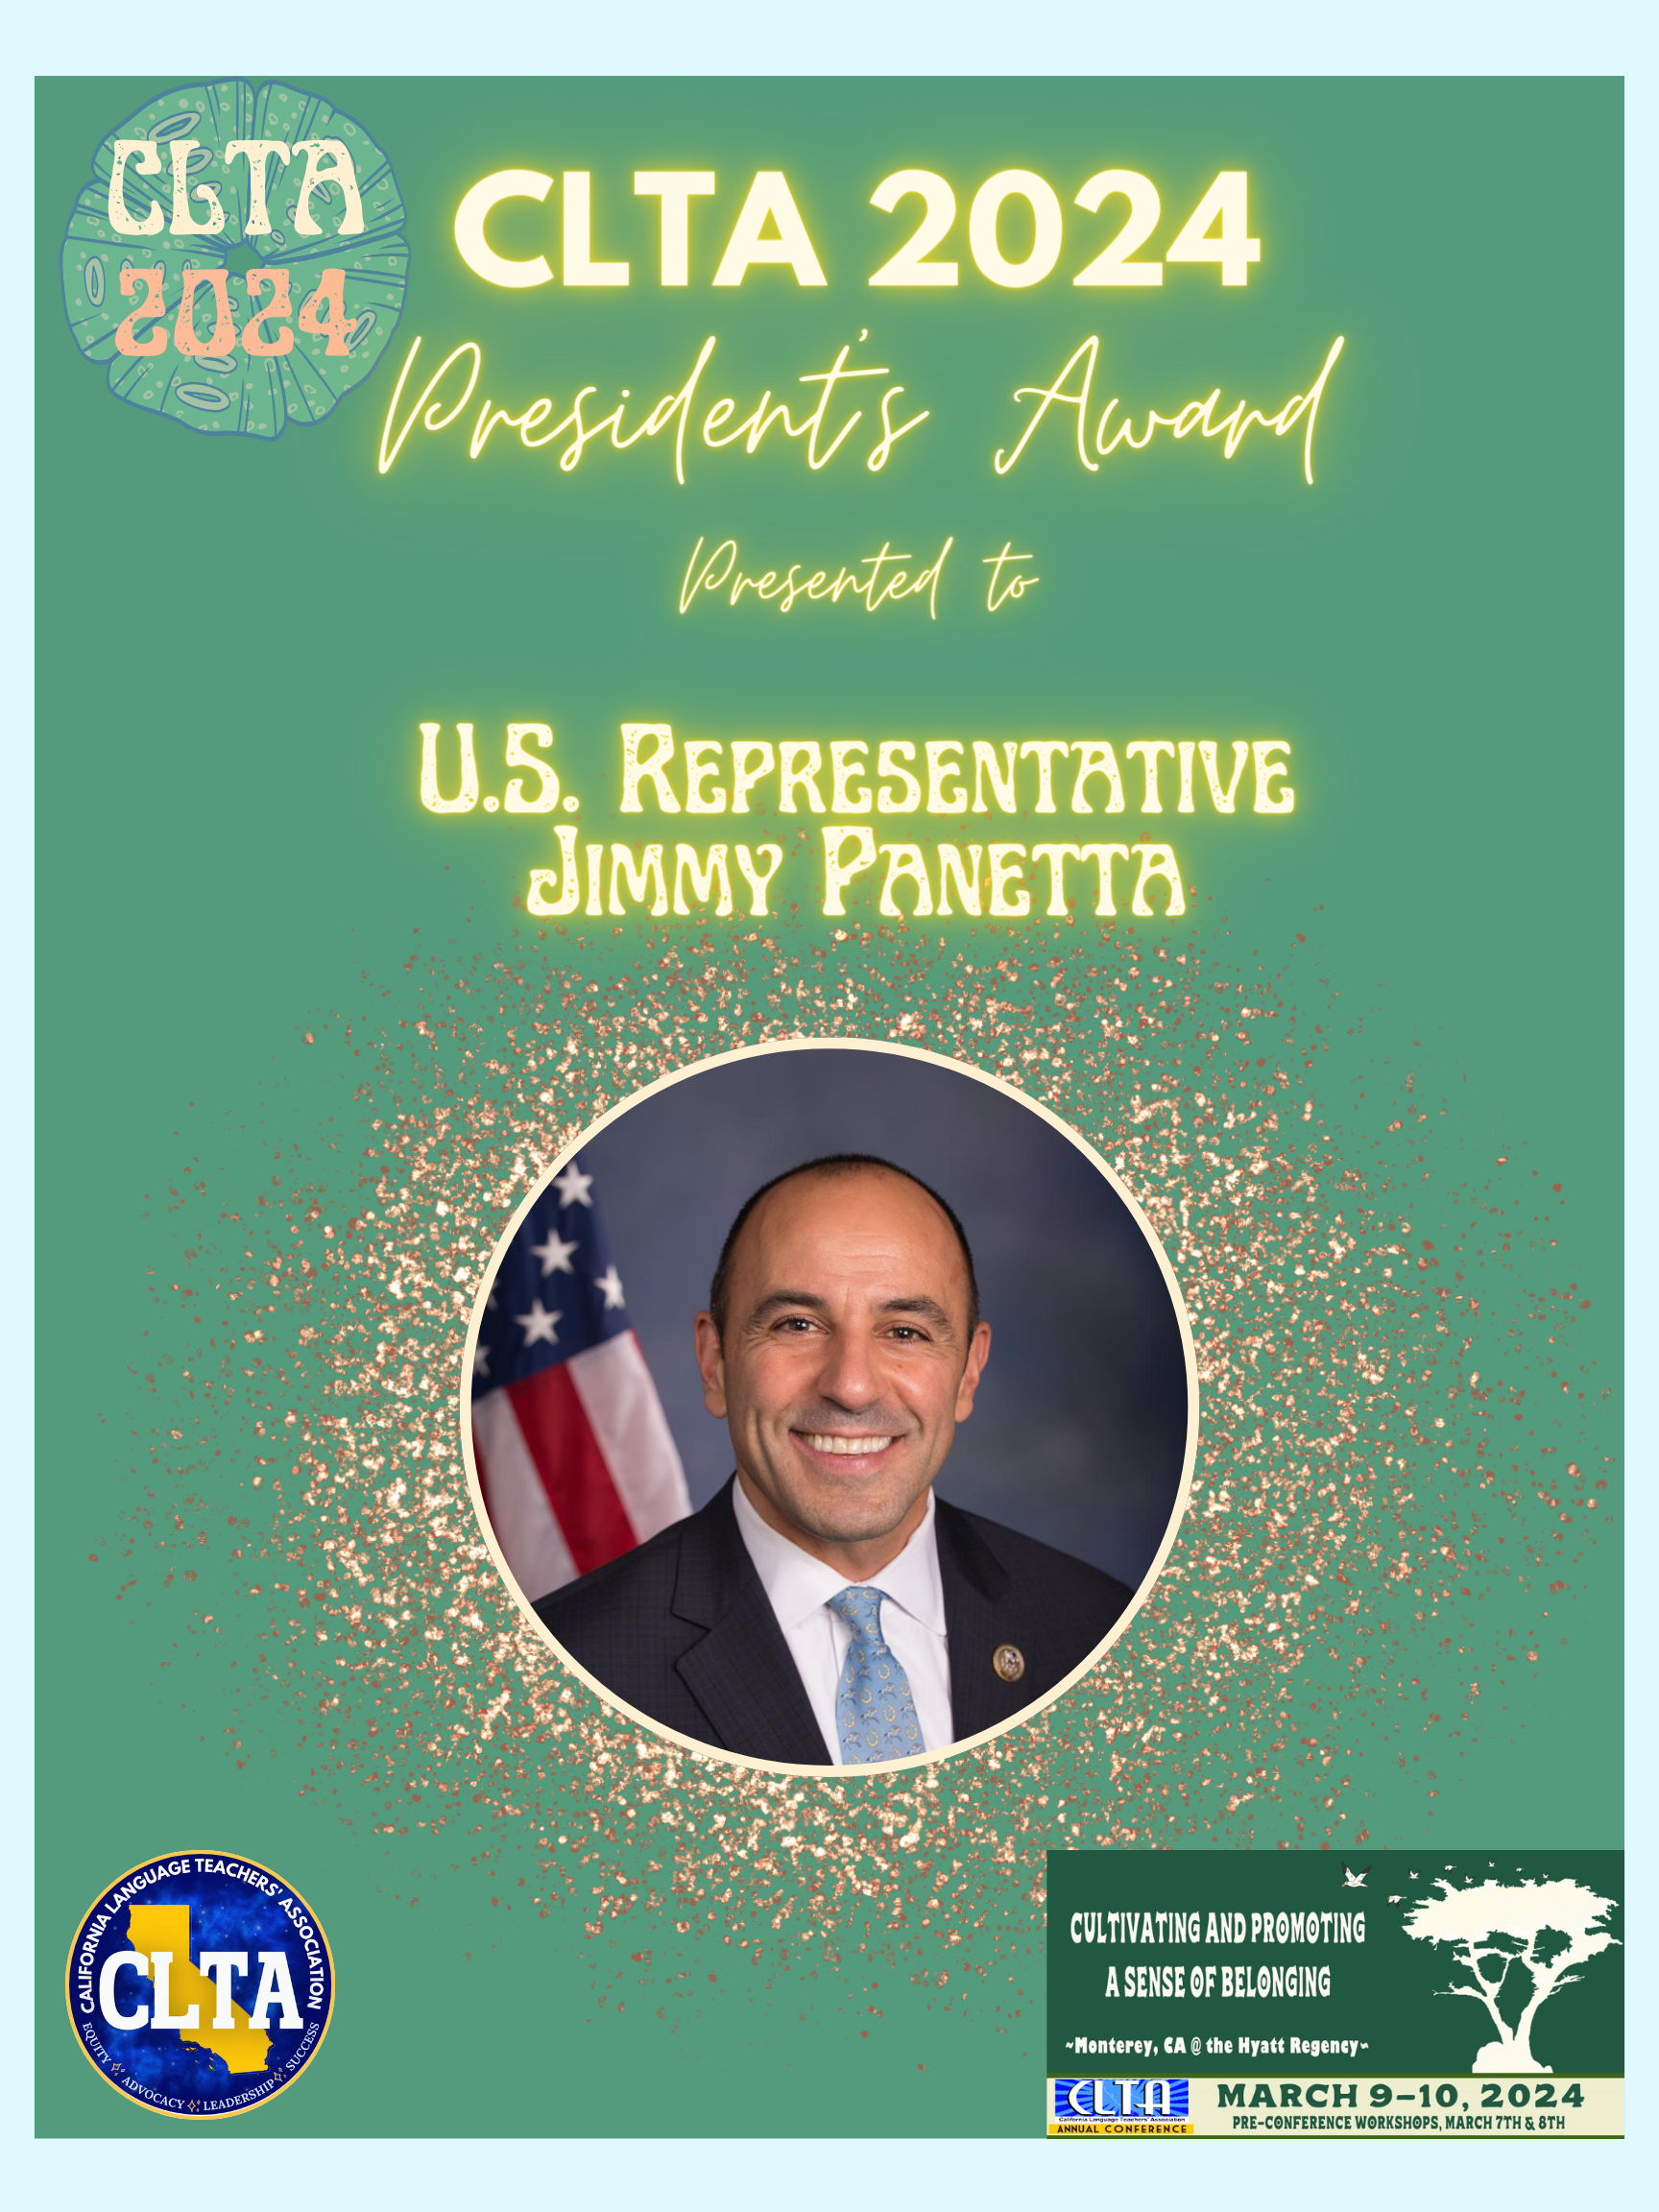 President's Award Jimmy Panetta